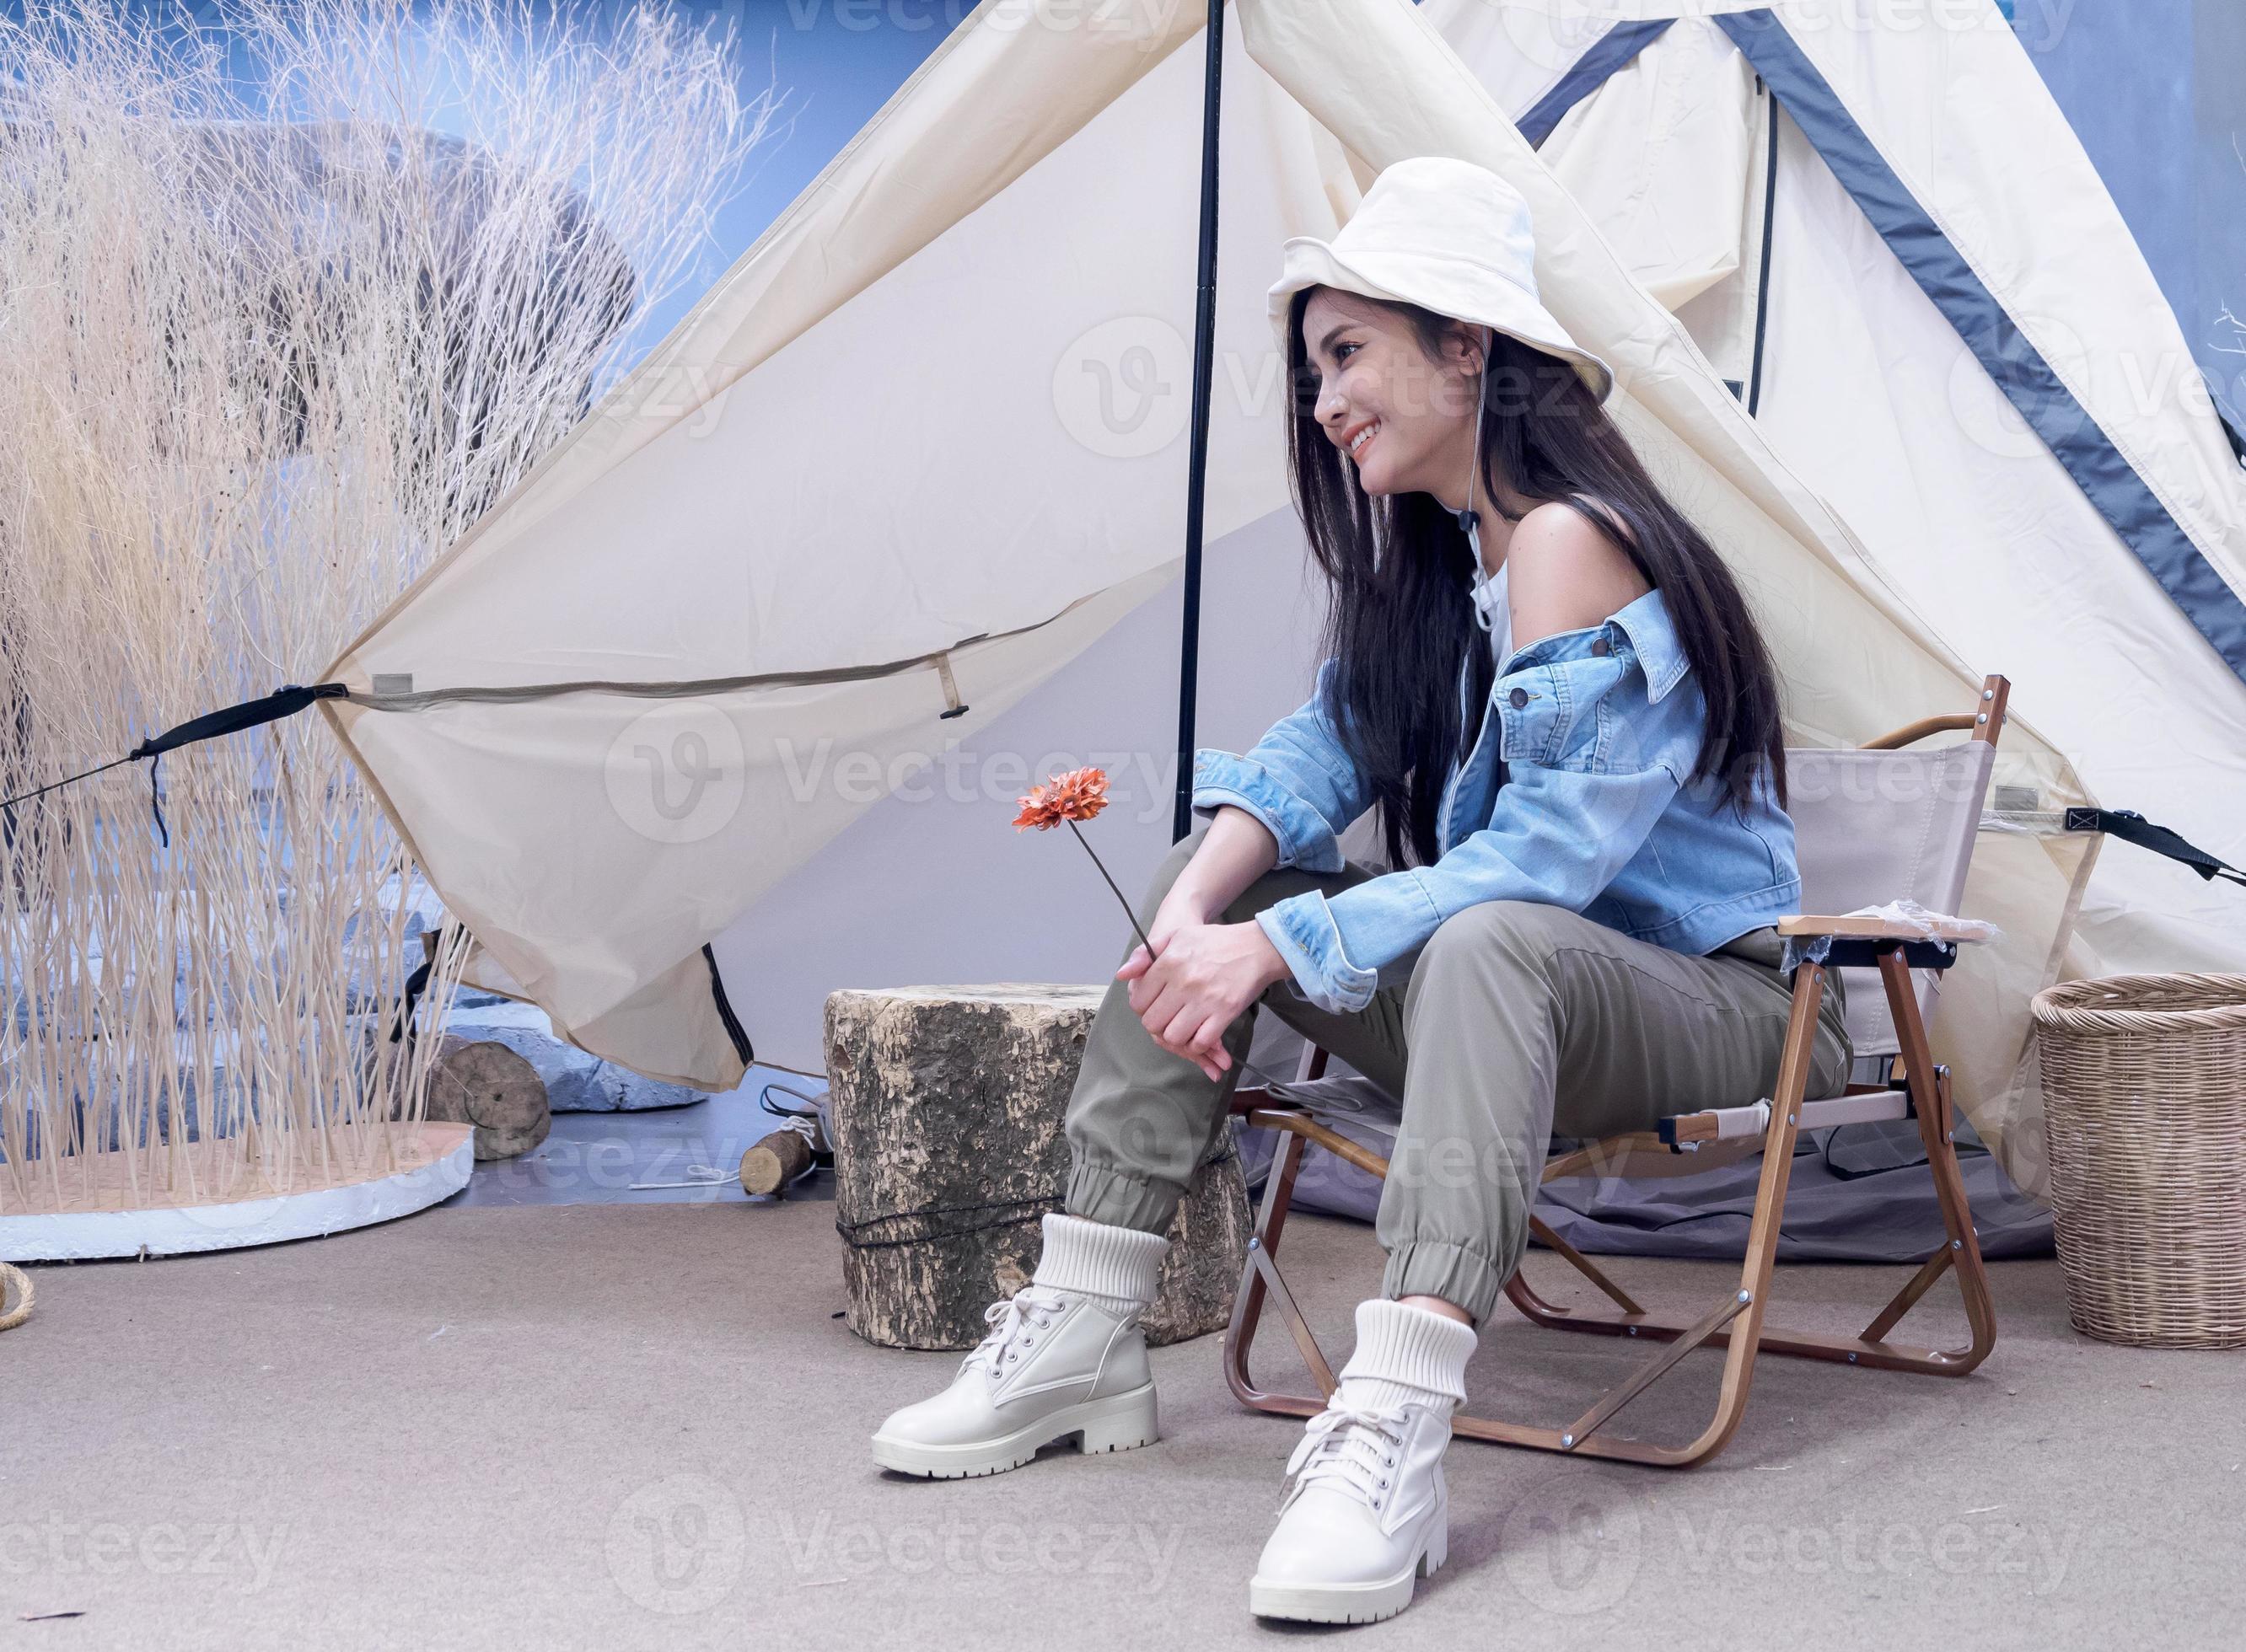 portret mooi jong meisje vrouw Aziatische mooie glimlach met hoed jas blauw een persoon alleen zittend op een stoel camping reis reis voor tent, op vrijheid ontspannen gelukkig genieten in vakantie.